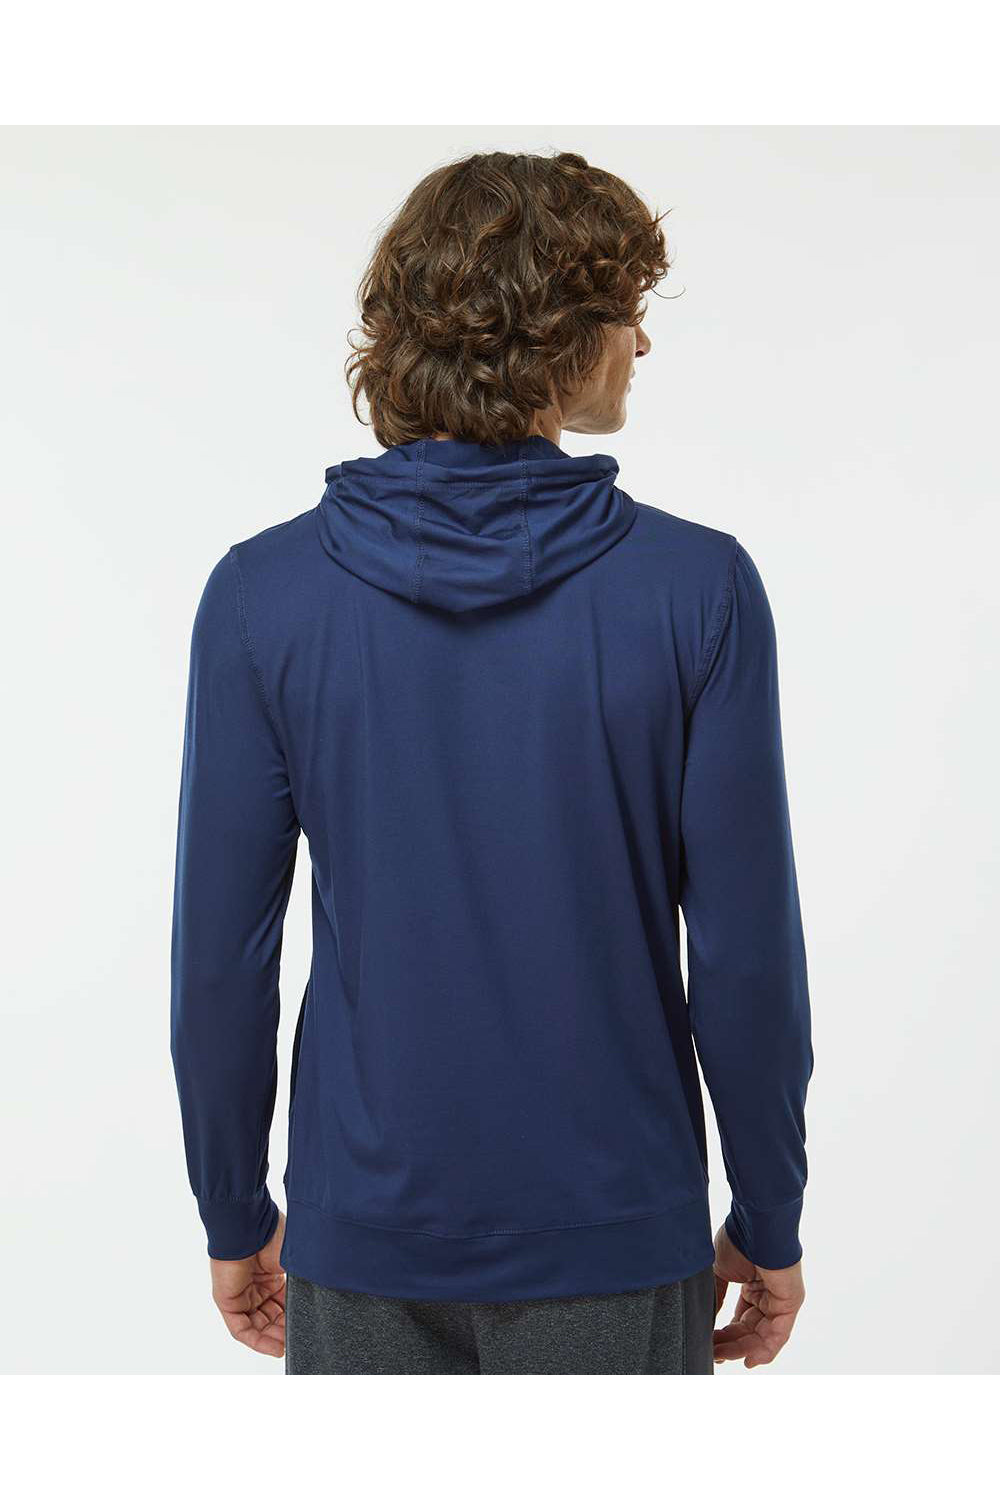 Holloway 222598 Mens Eco Revive Ventura Hooded Sweatshirt Hoodie Navy Blue Model Back